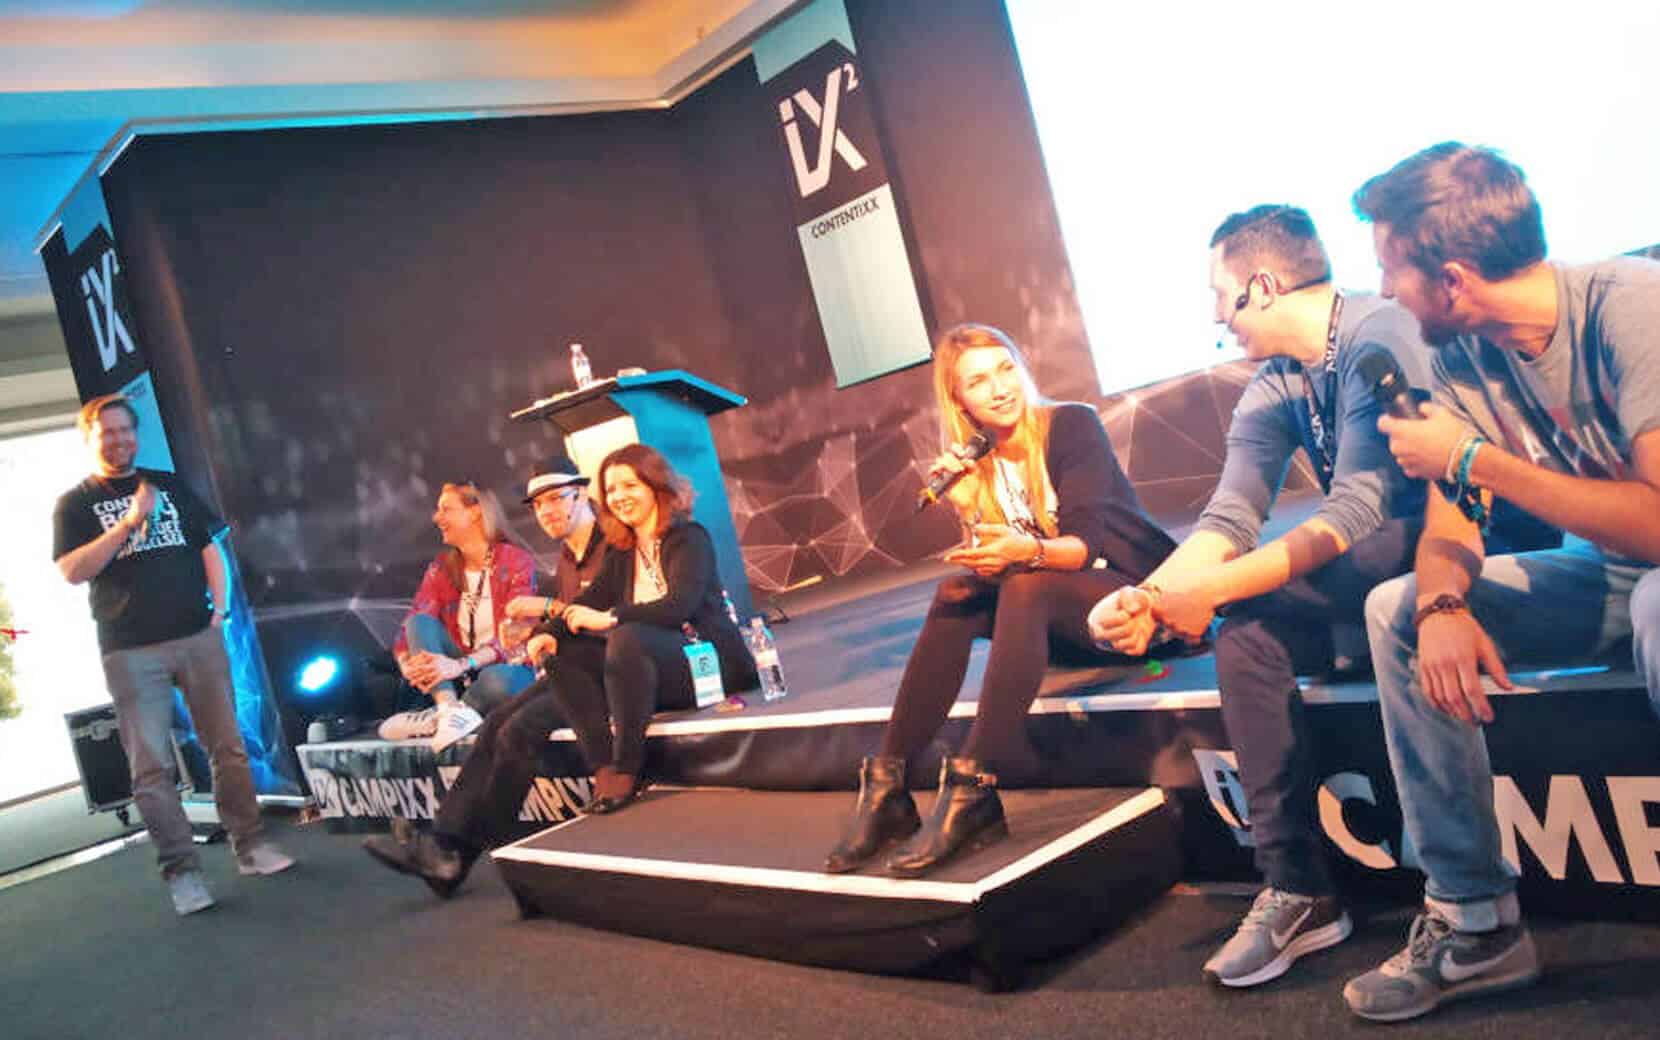 Panel Diskussion auf der Campixx 2019